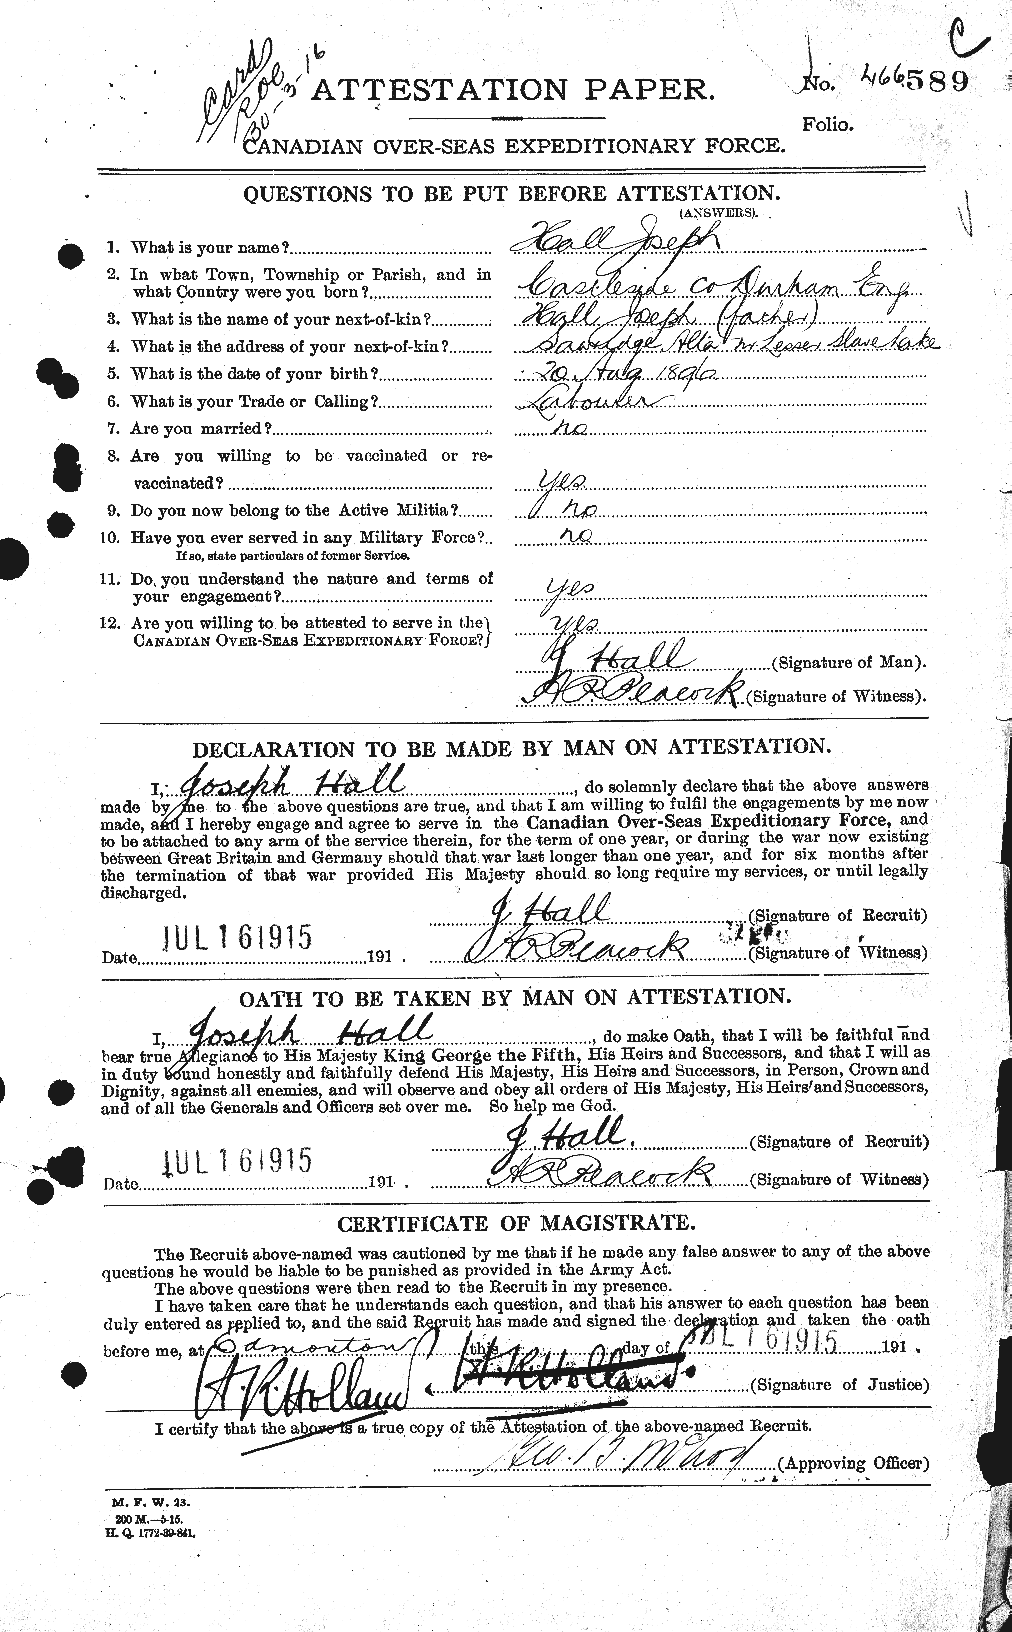 Dossiers du Personnel de la Première Guerre mondiale - CEC 369777a